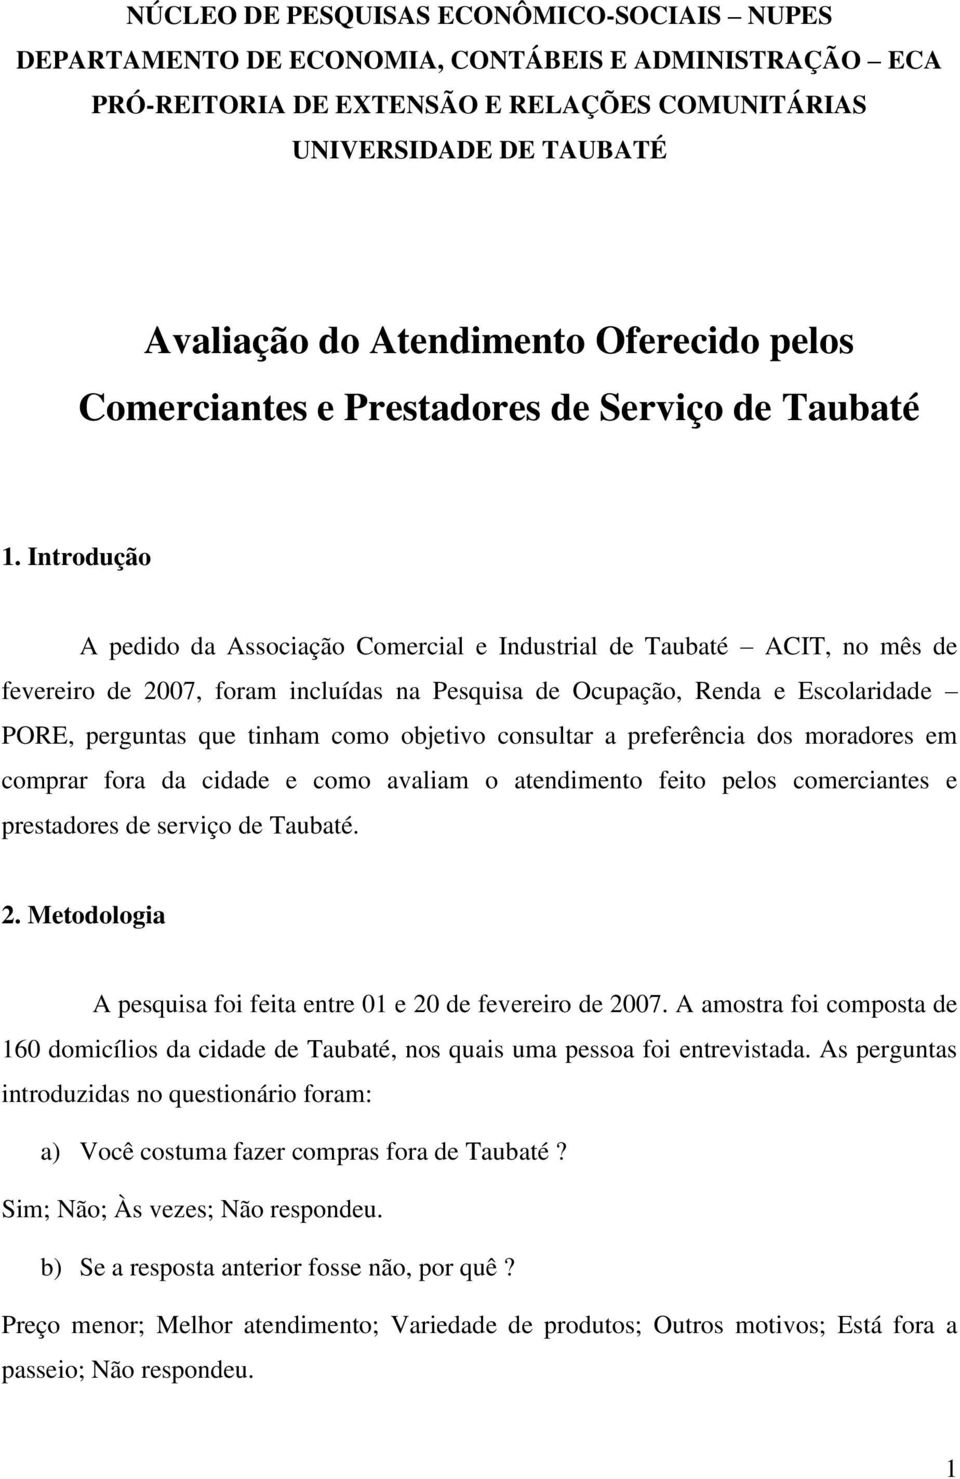 Introdução A pedido da Associação Comercial e Industrial de Taubaté ACIT, no mês de fevereiro de 2007, foram incluídas na Pesquisa de Ocupação, Renda e Escolaridade PORE, perguntas que tinham como